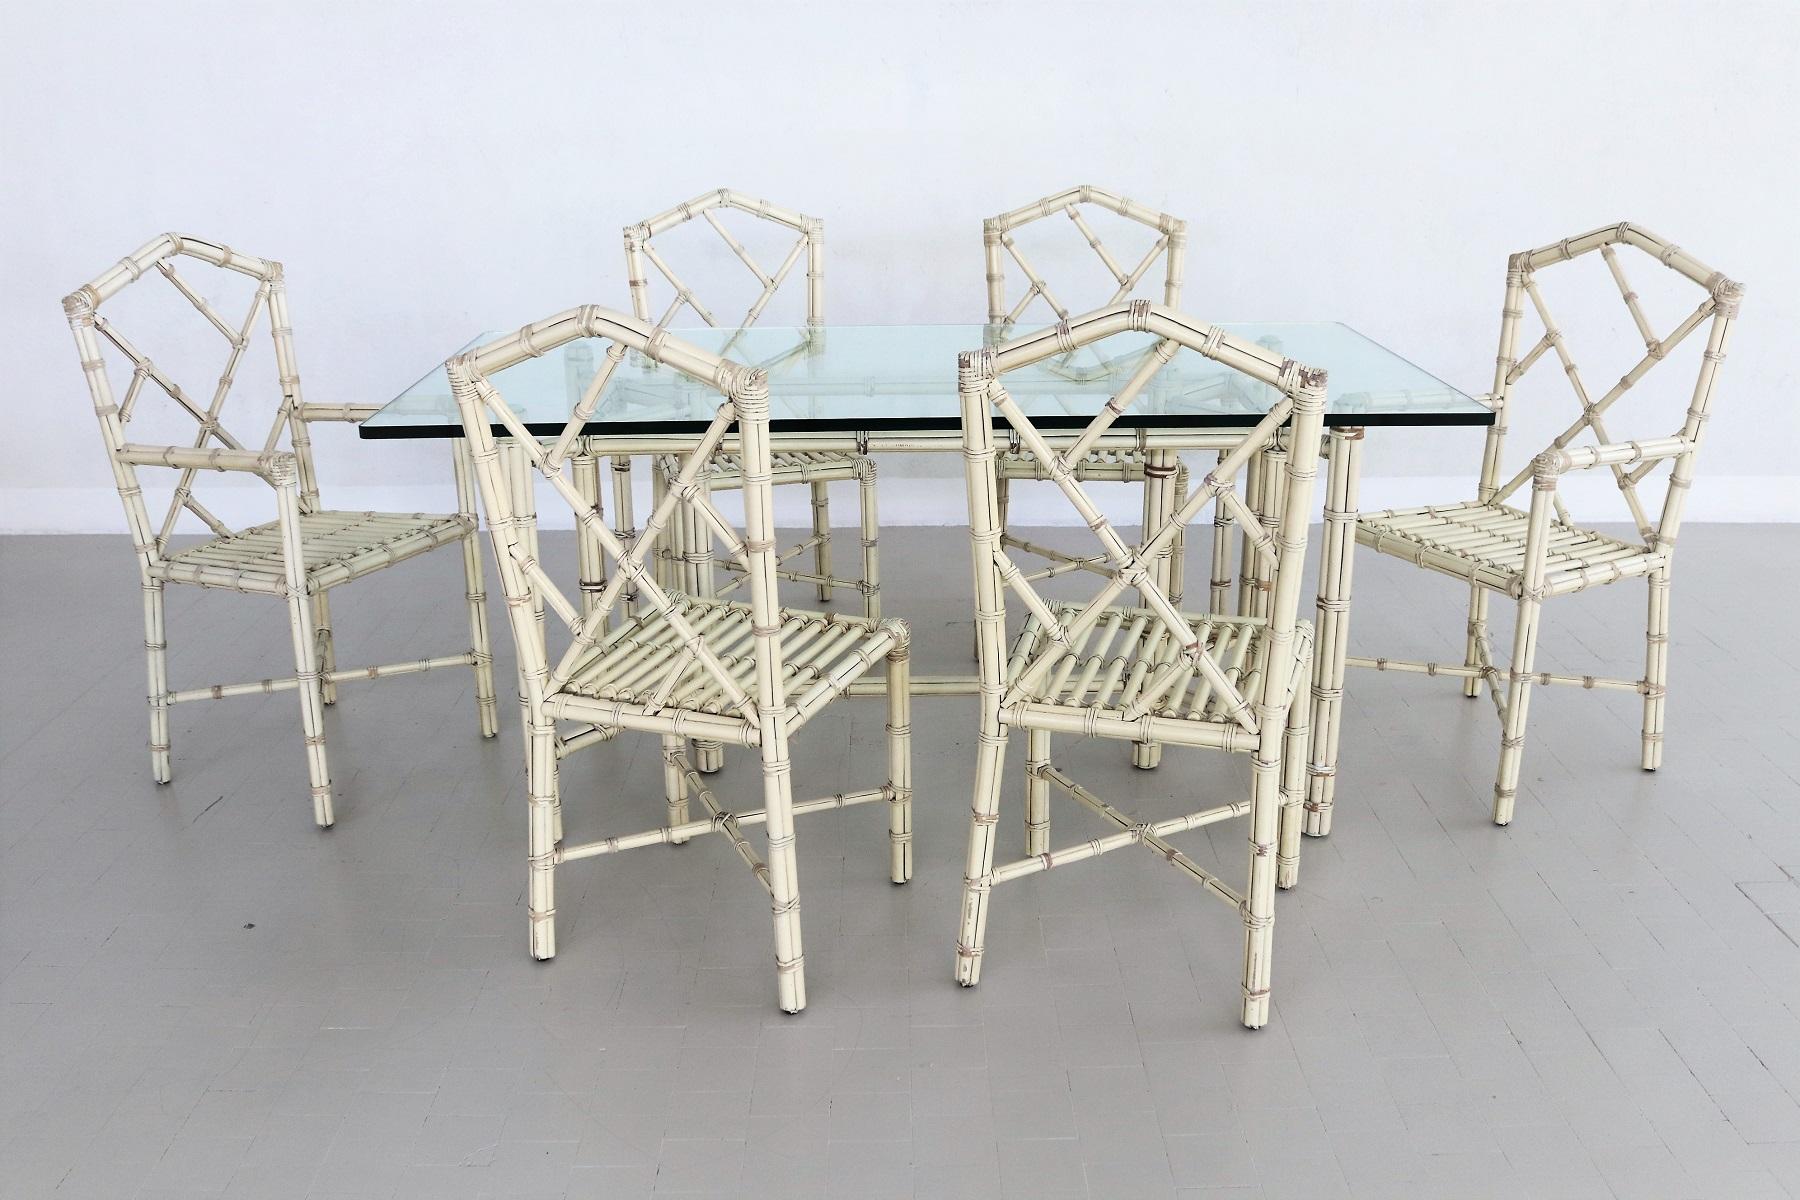 Magnifique ensemble de 6 chaises. Deux des chaises sont des fauteuils pour chaque extrémité de la table.
L'ensemble est composé de panneaux de bois de bambou peints en blanc coquille d'œuf.
À l'intérieur des bâtons de bambou se trouvent des tubes